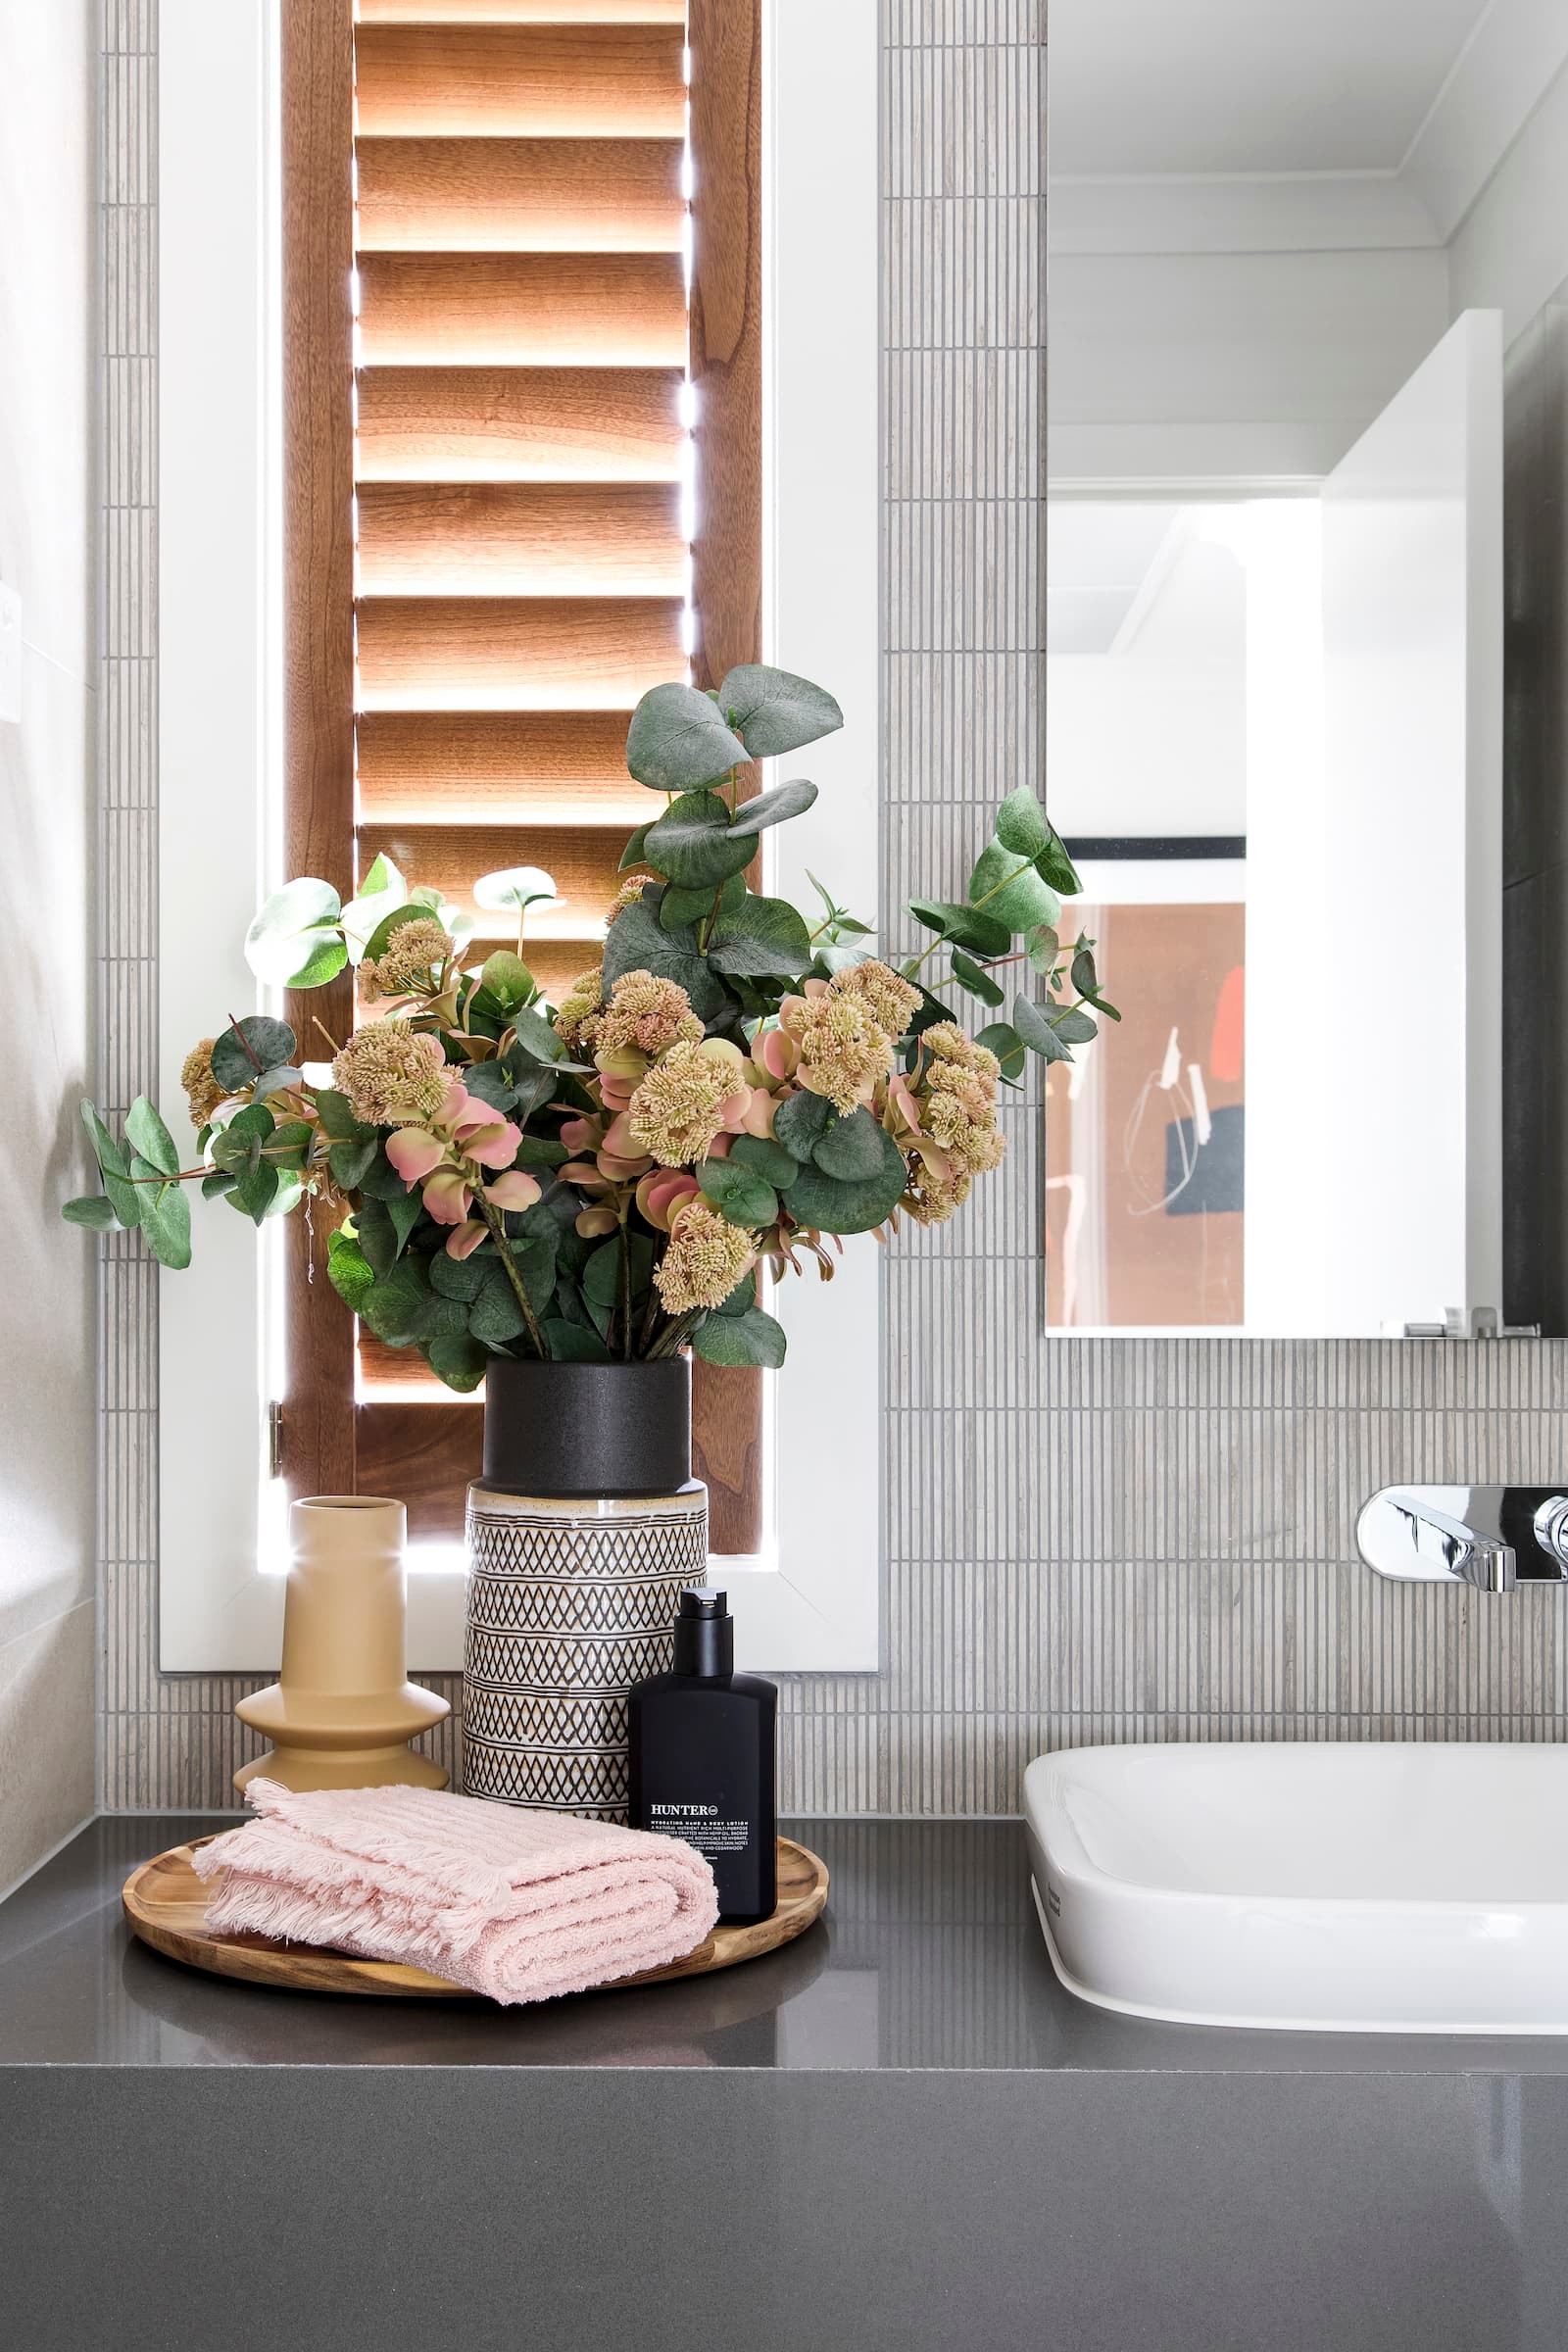 lorraine lea cooper towels bathroom vanity styling ideas